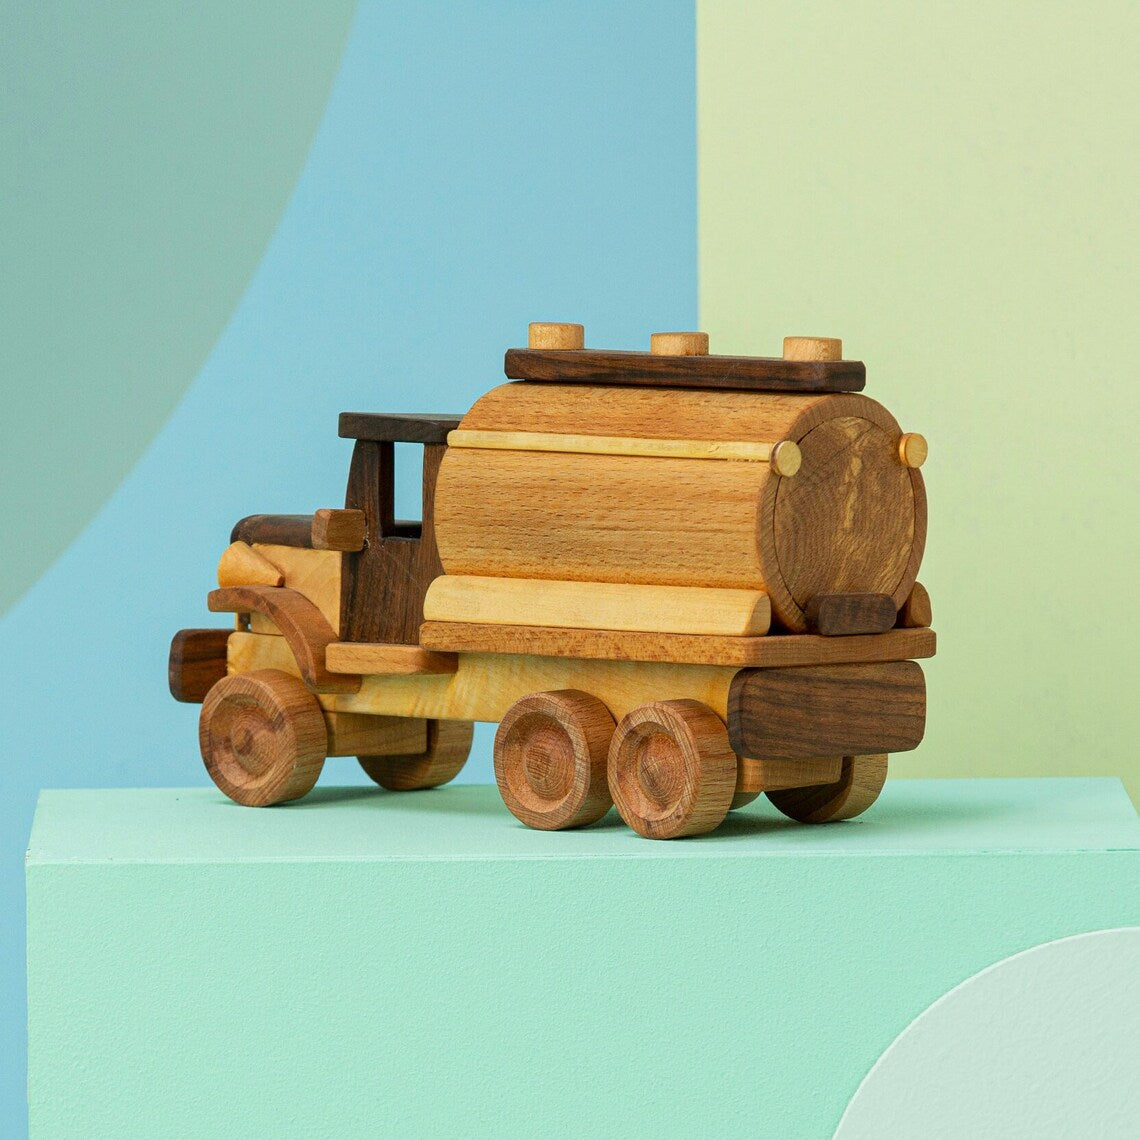 Wooden Toy Milk Truck